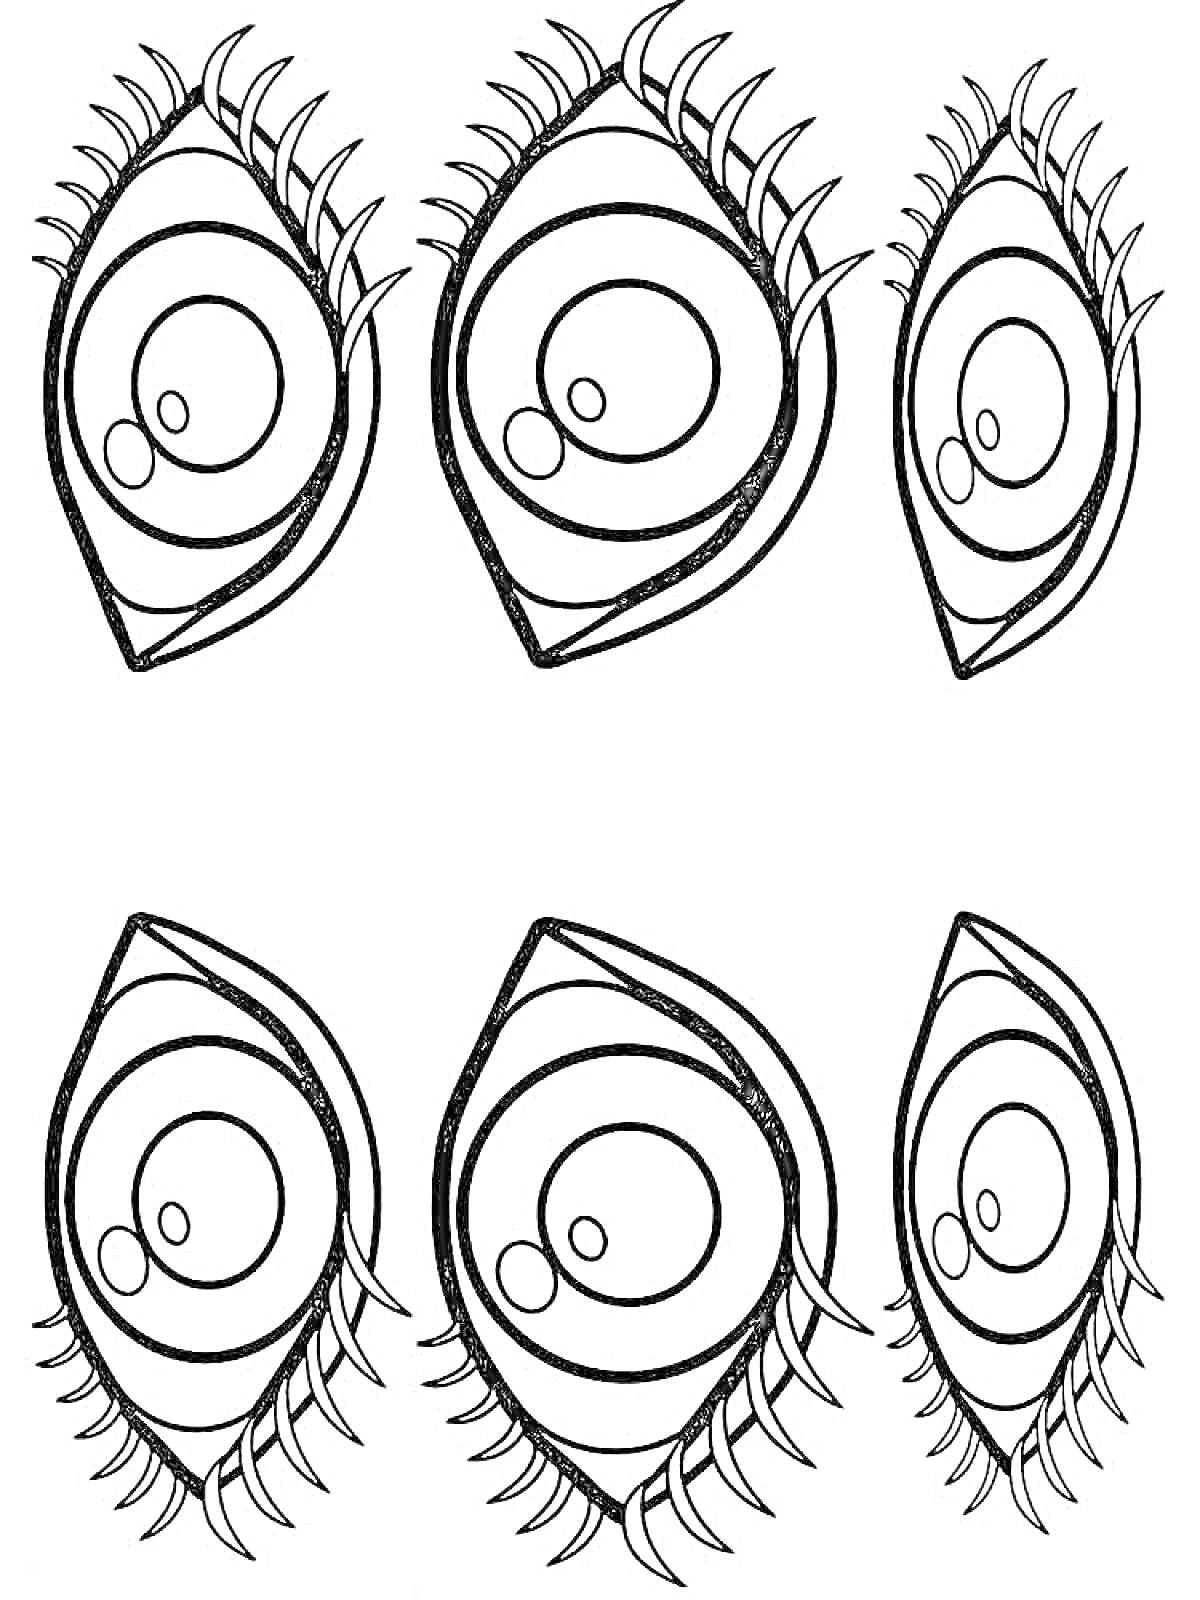 Раскраска Пять глаз с ресницами, два больших глаза и три маленьких глаза, рисунок контурный